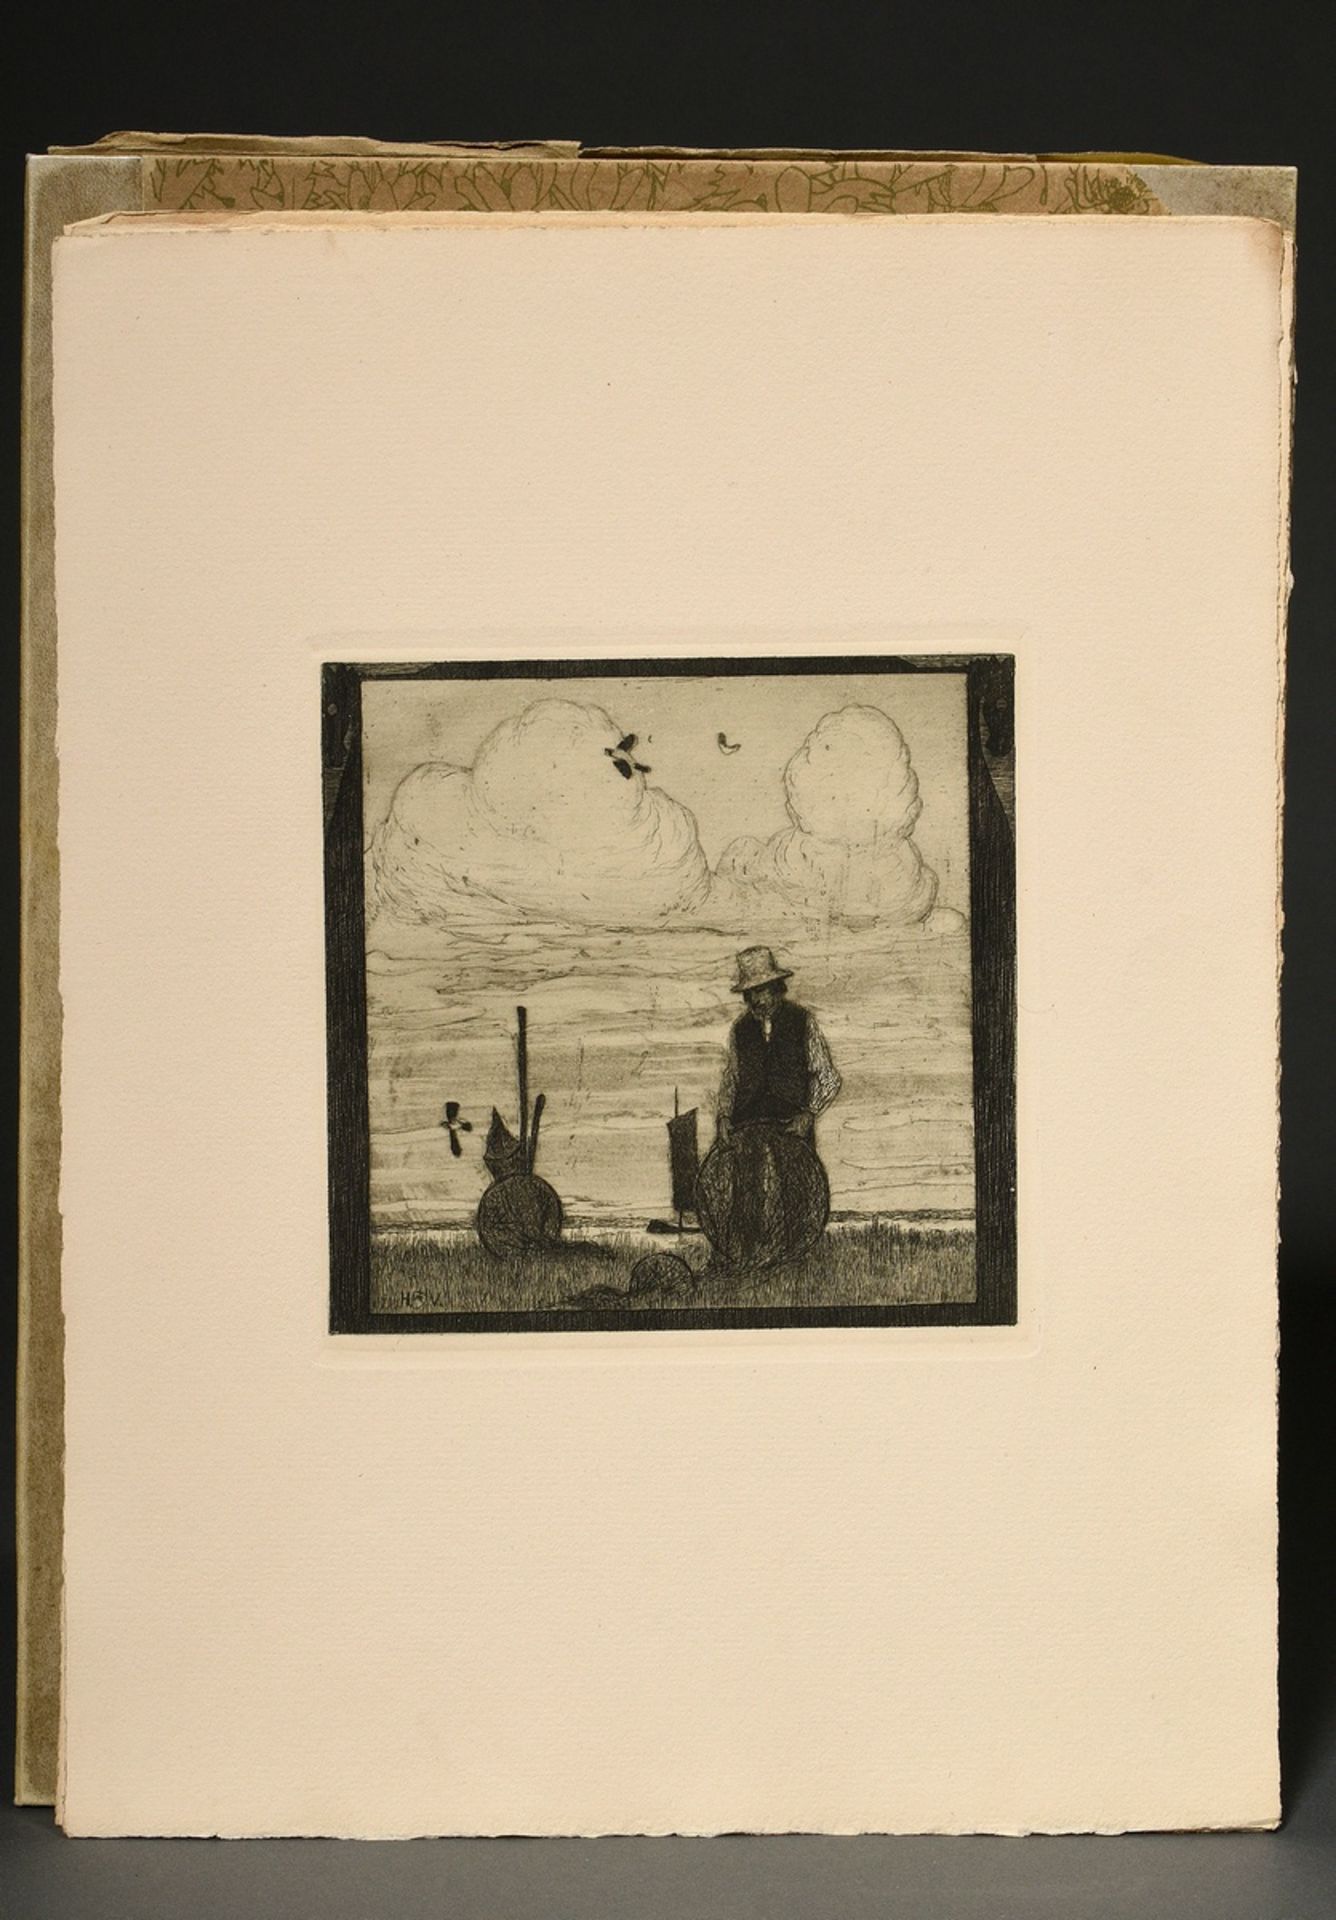 Vogeler, Heinrich (1872-1942) "An den Frühling" 1899/1901, Mappe mit 10 Radierungen und Vorblatt, P - Bild 12 aus 25